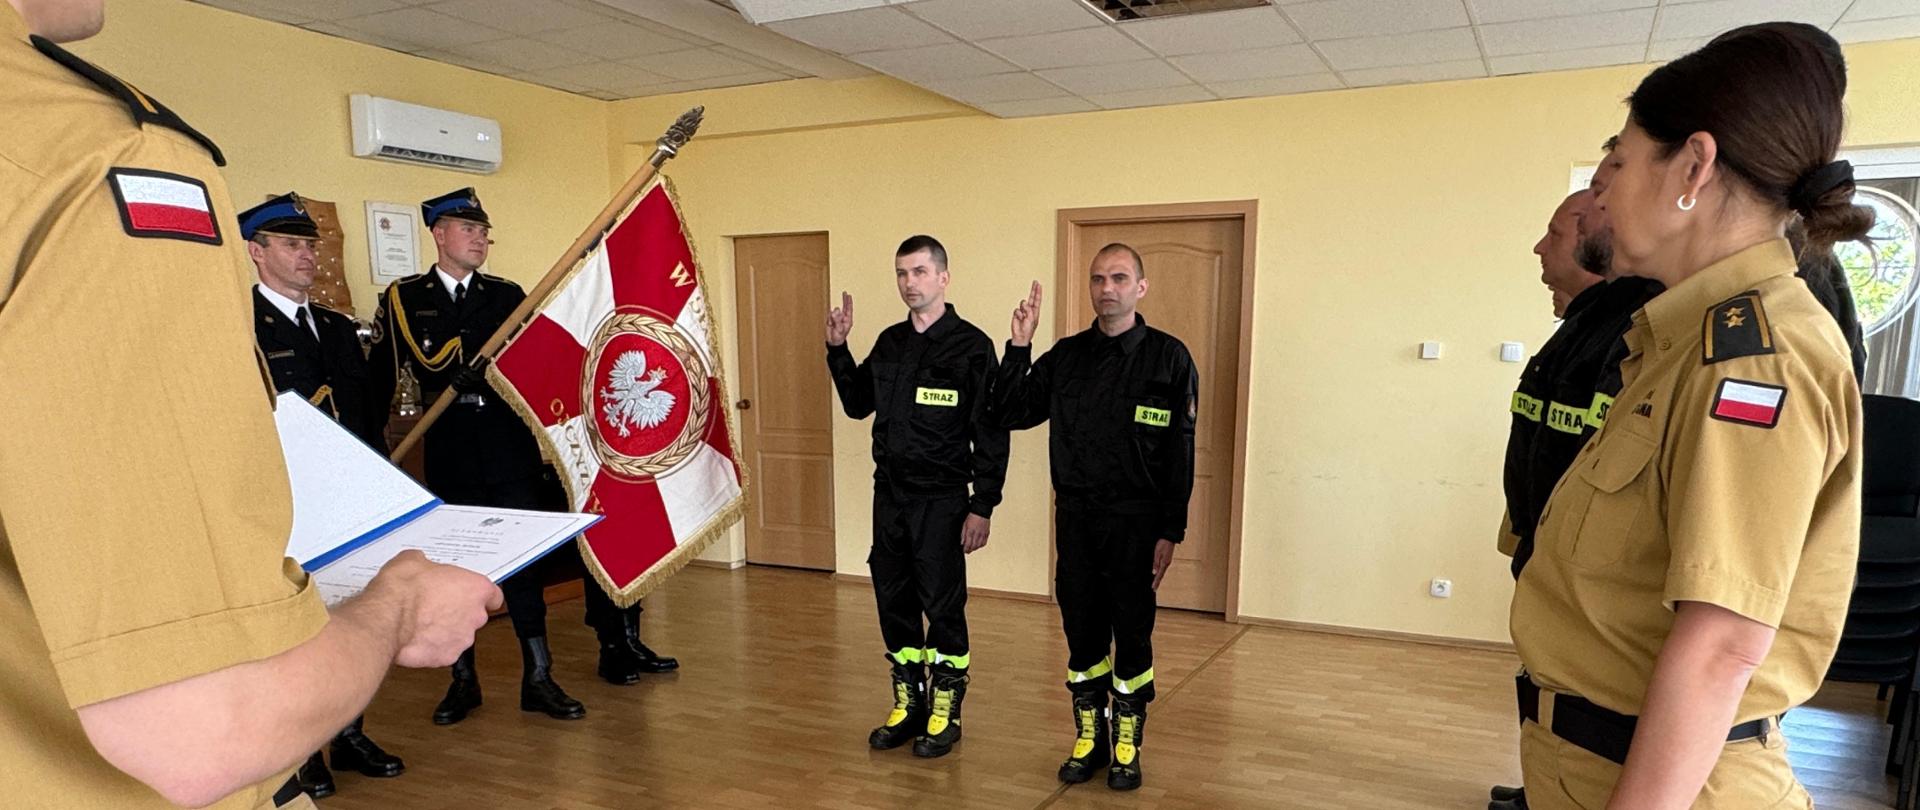 Zdjęcie przedstawia uroczystość złożenia ślubowania na sztandar przez nowych strażaków w obecności p. o Komendanta Powiatowego PSP w Strzelcach Krajeńskich